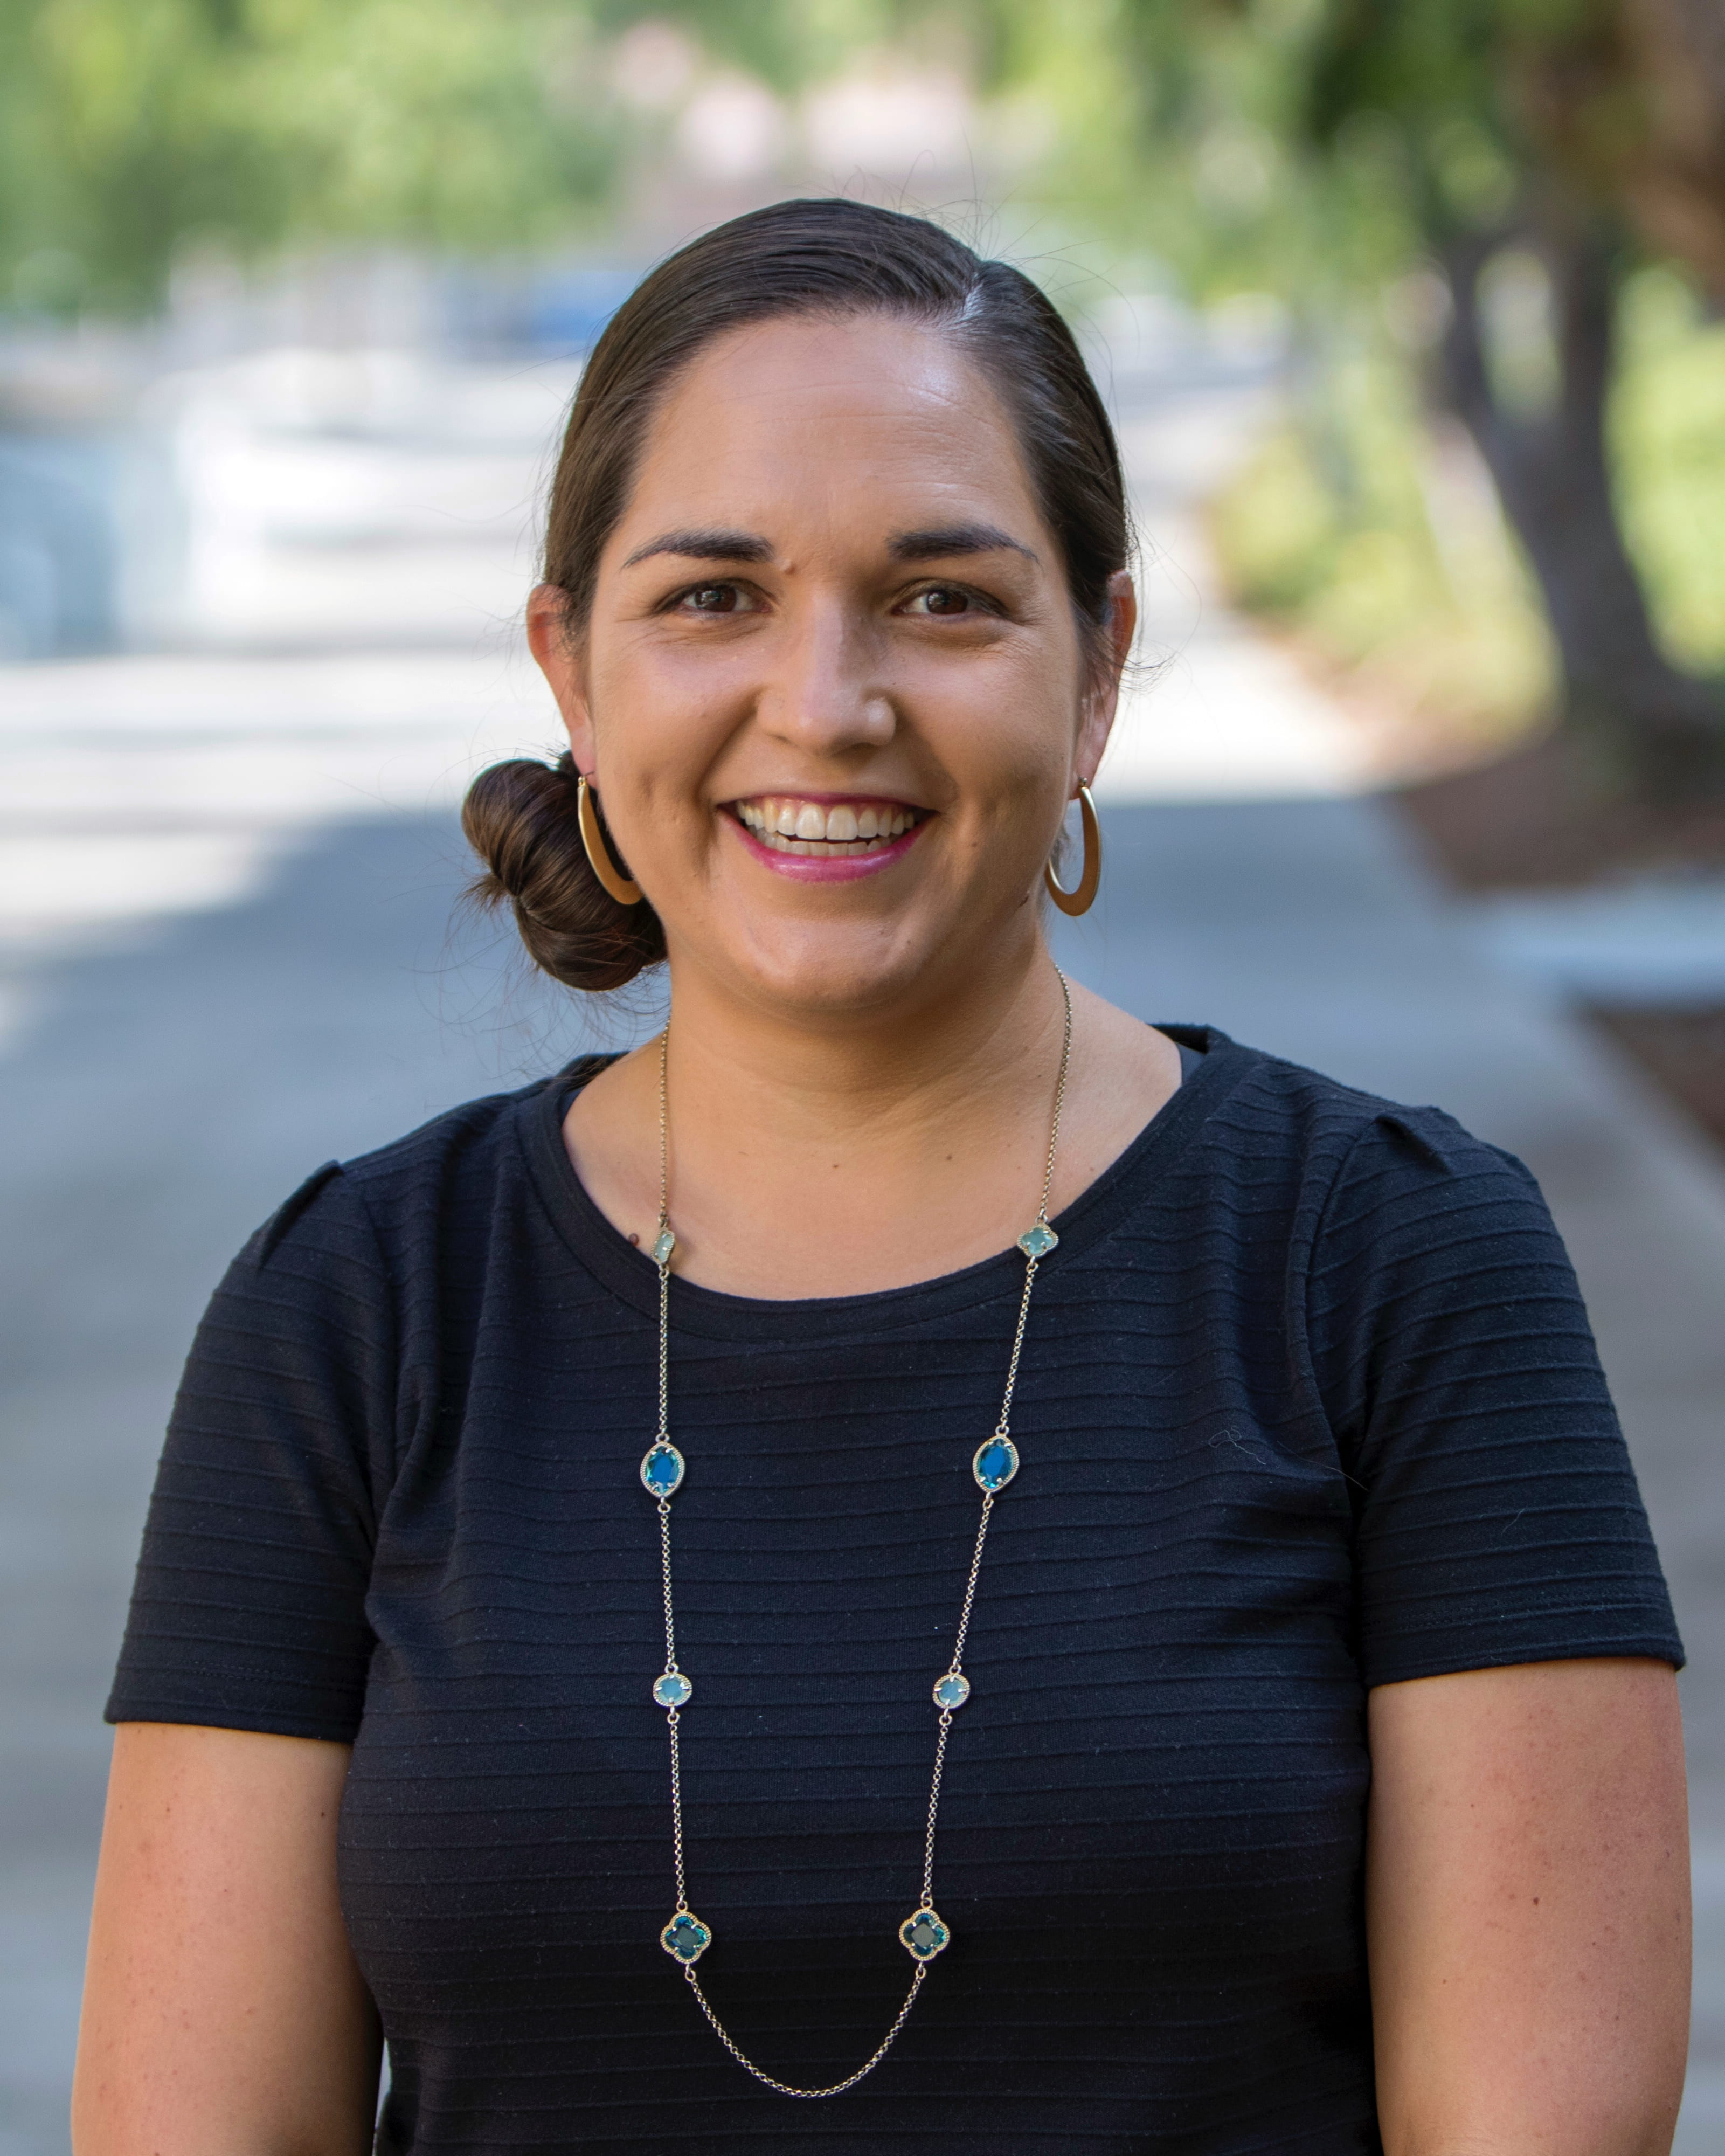 Laura Enriquez, UCI associate professor of Chicano/Latino studies